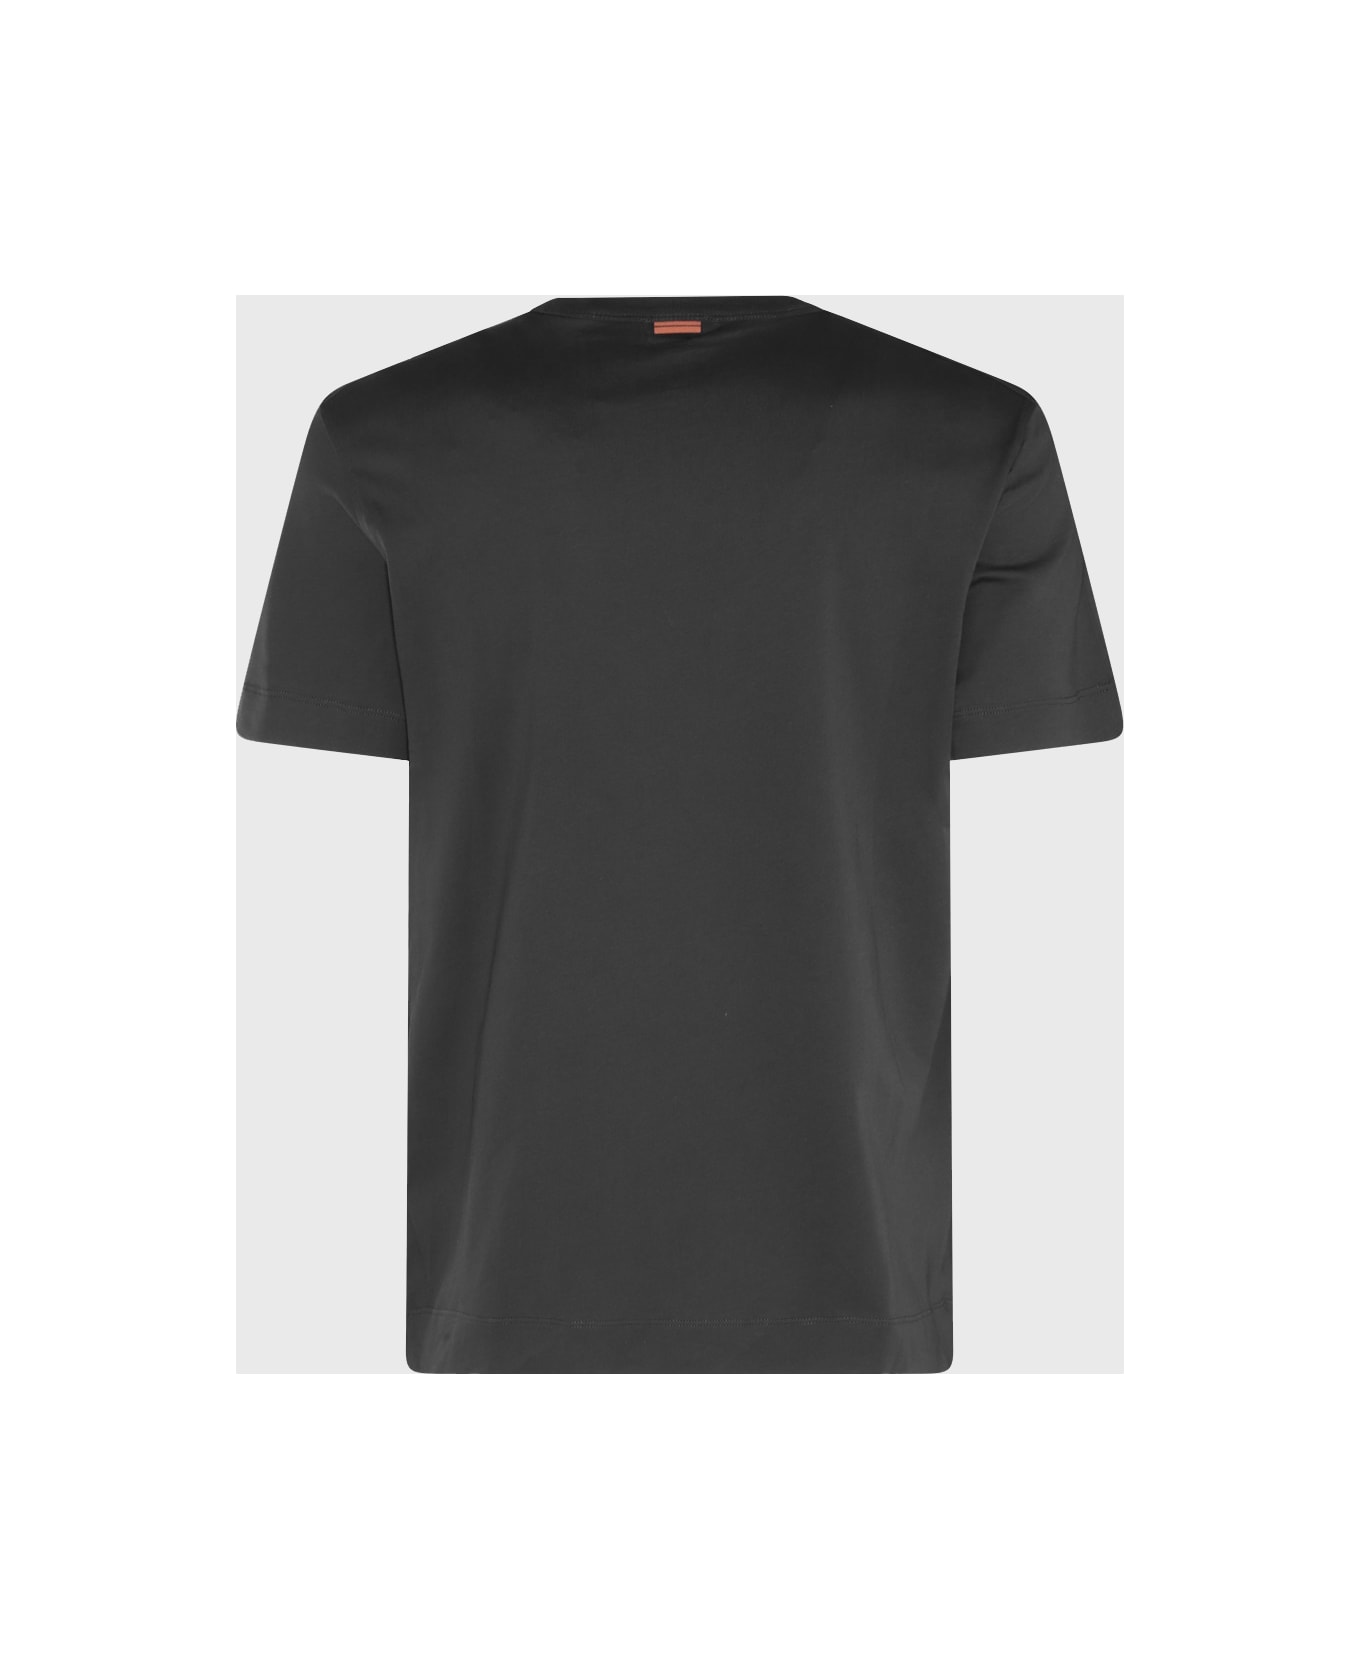 Zegna Black Cotton T-shirt